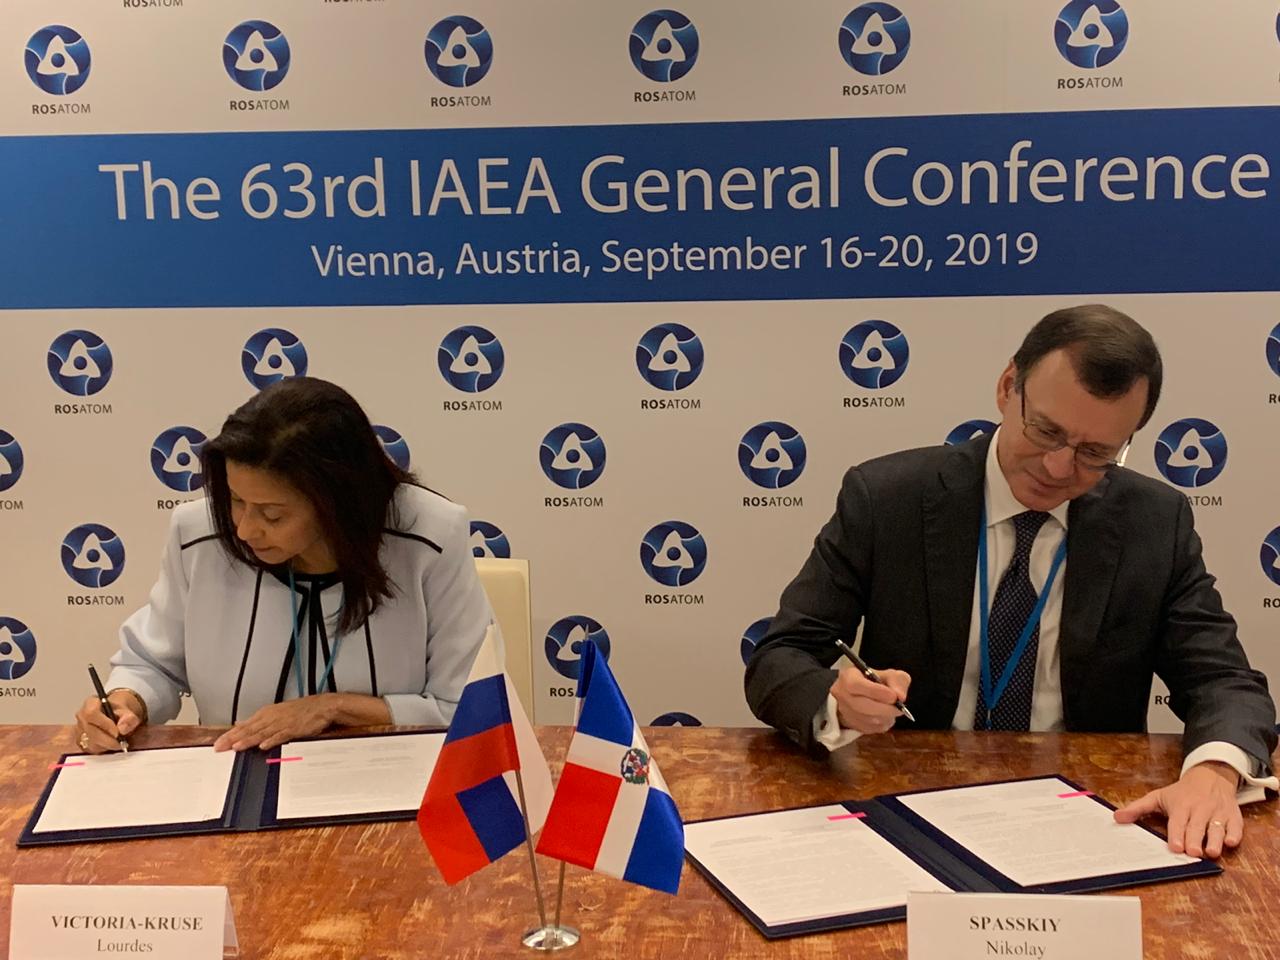 Rússia e República Dominicana desenvolverão cooperação no campo do uso pacífico da energia nuclear em 17 de setembro, à margem da 63ª Conferência Geral da AIEA em Viena